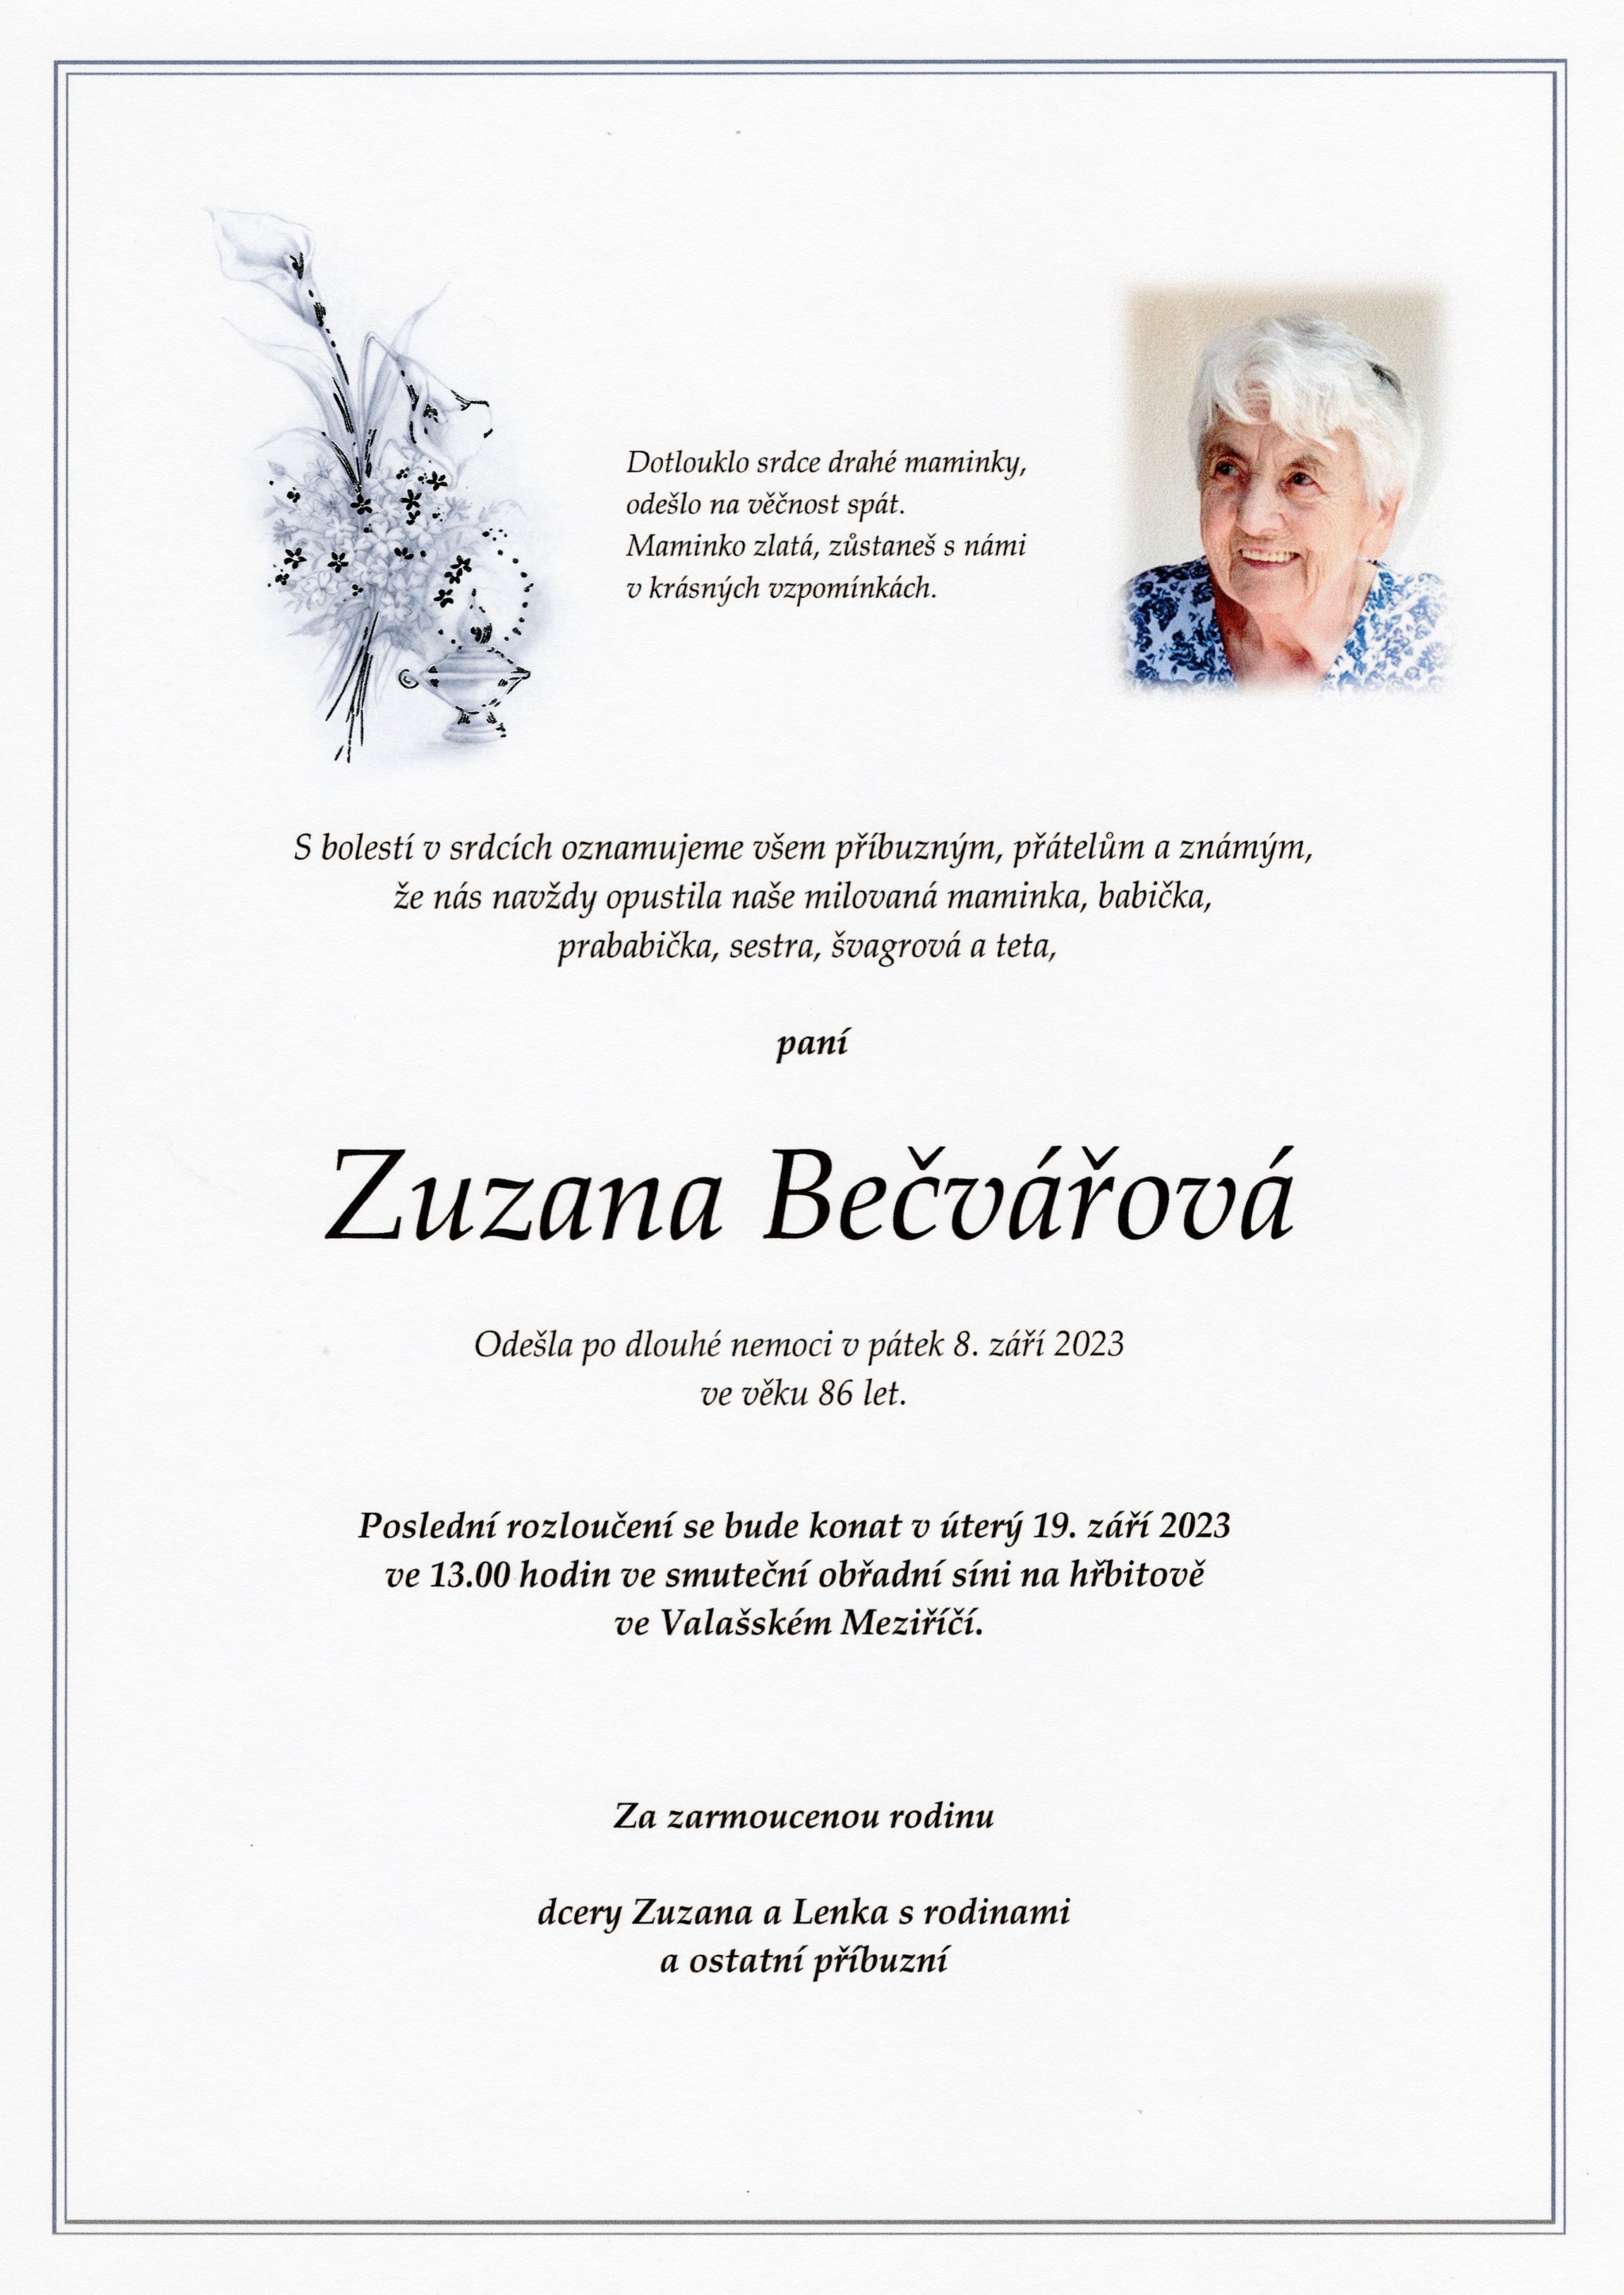 Zuzana Bečvářová